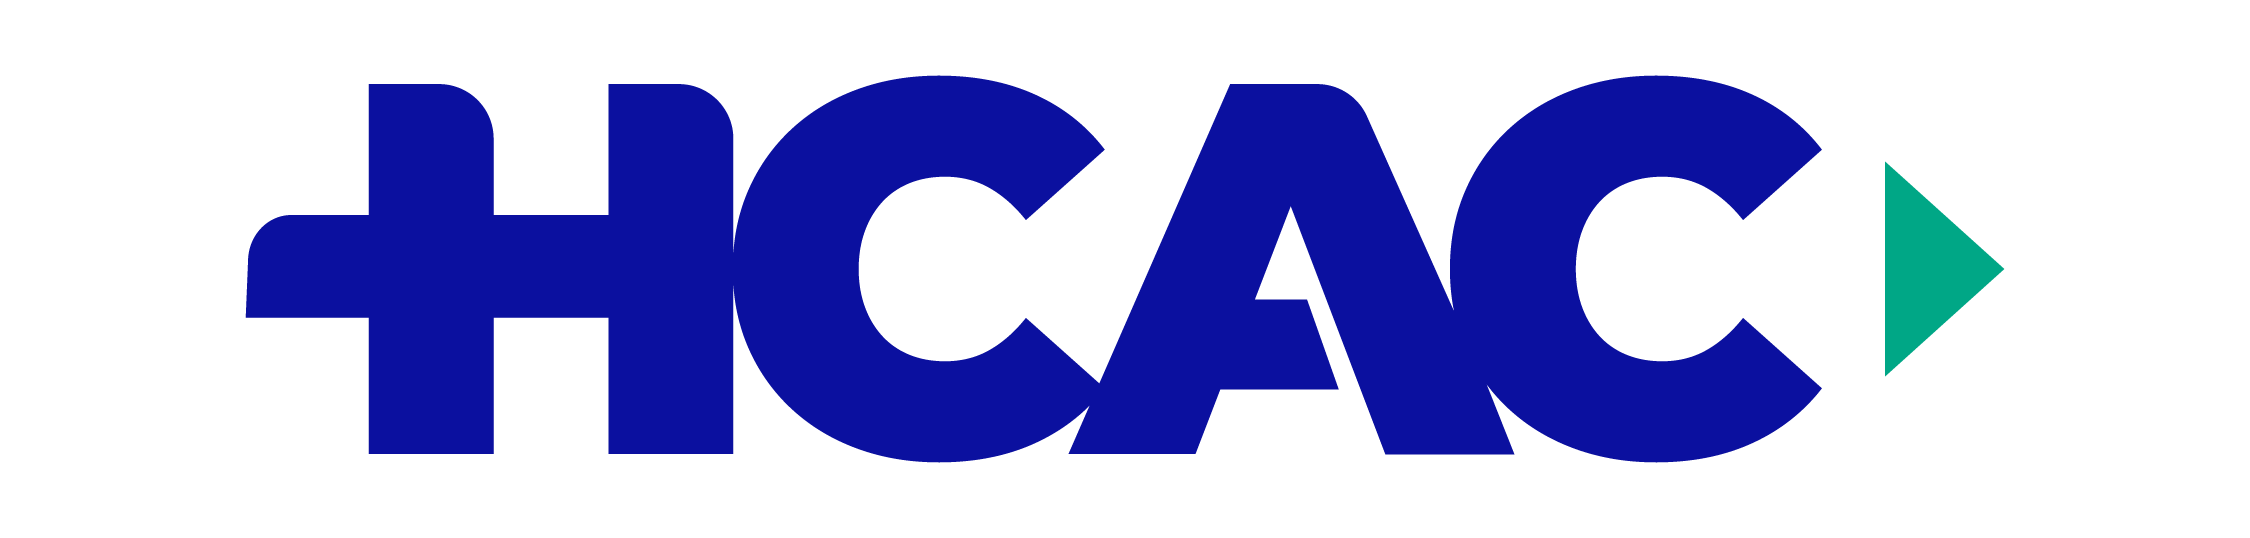 HCAC-logo